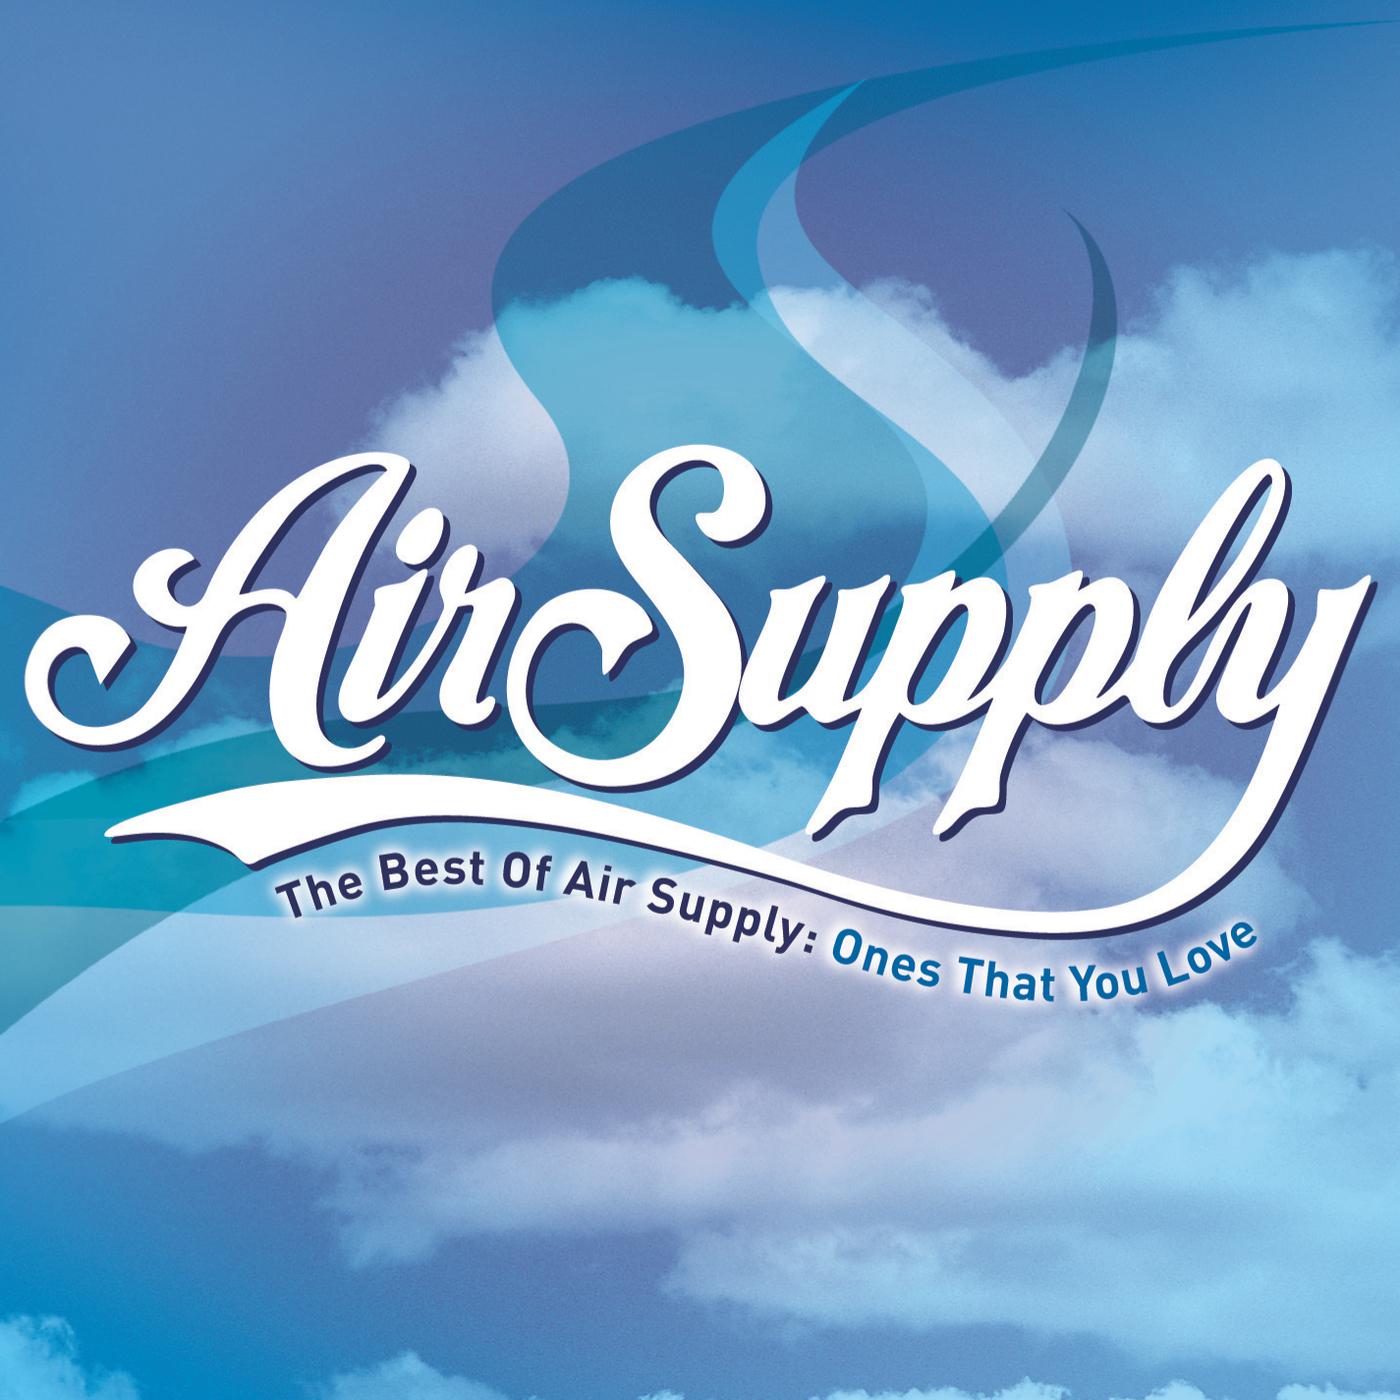 I love air. Группа Air Supply. Air Supply v2.1. The one that you Love Air Supply. Compact Air Supply Unit.